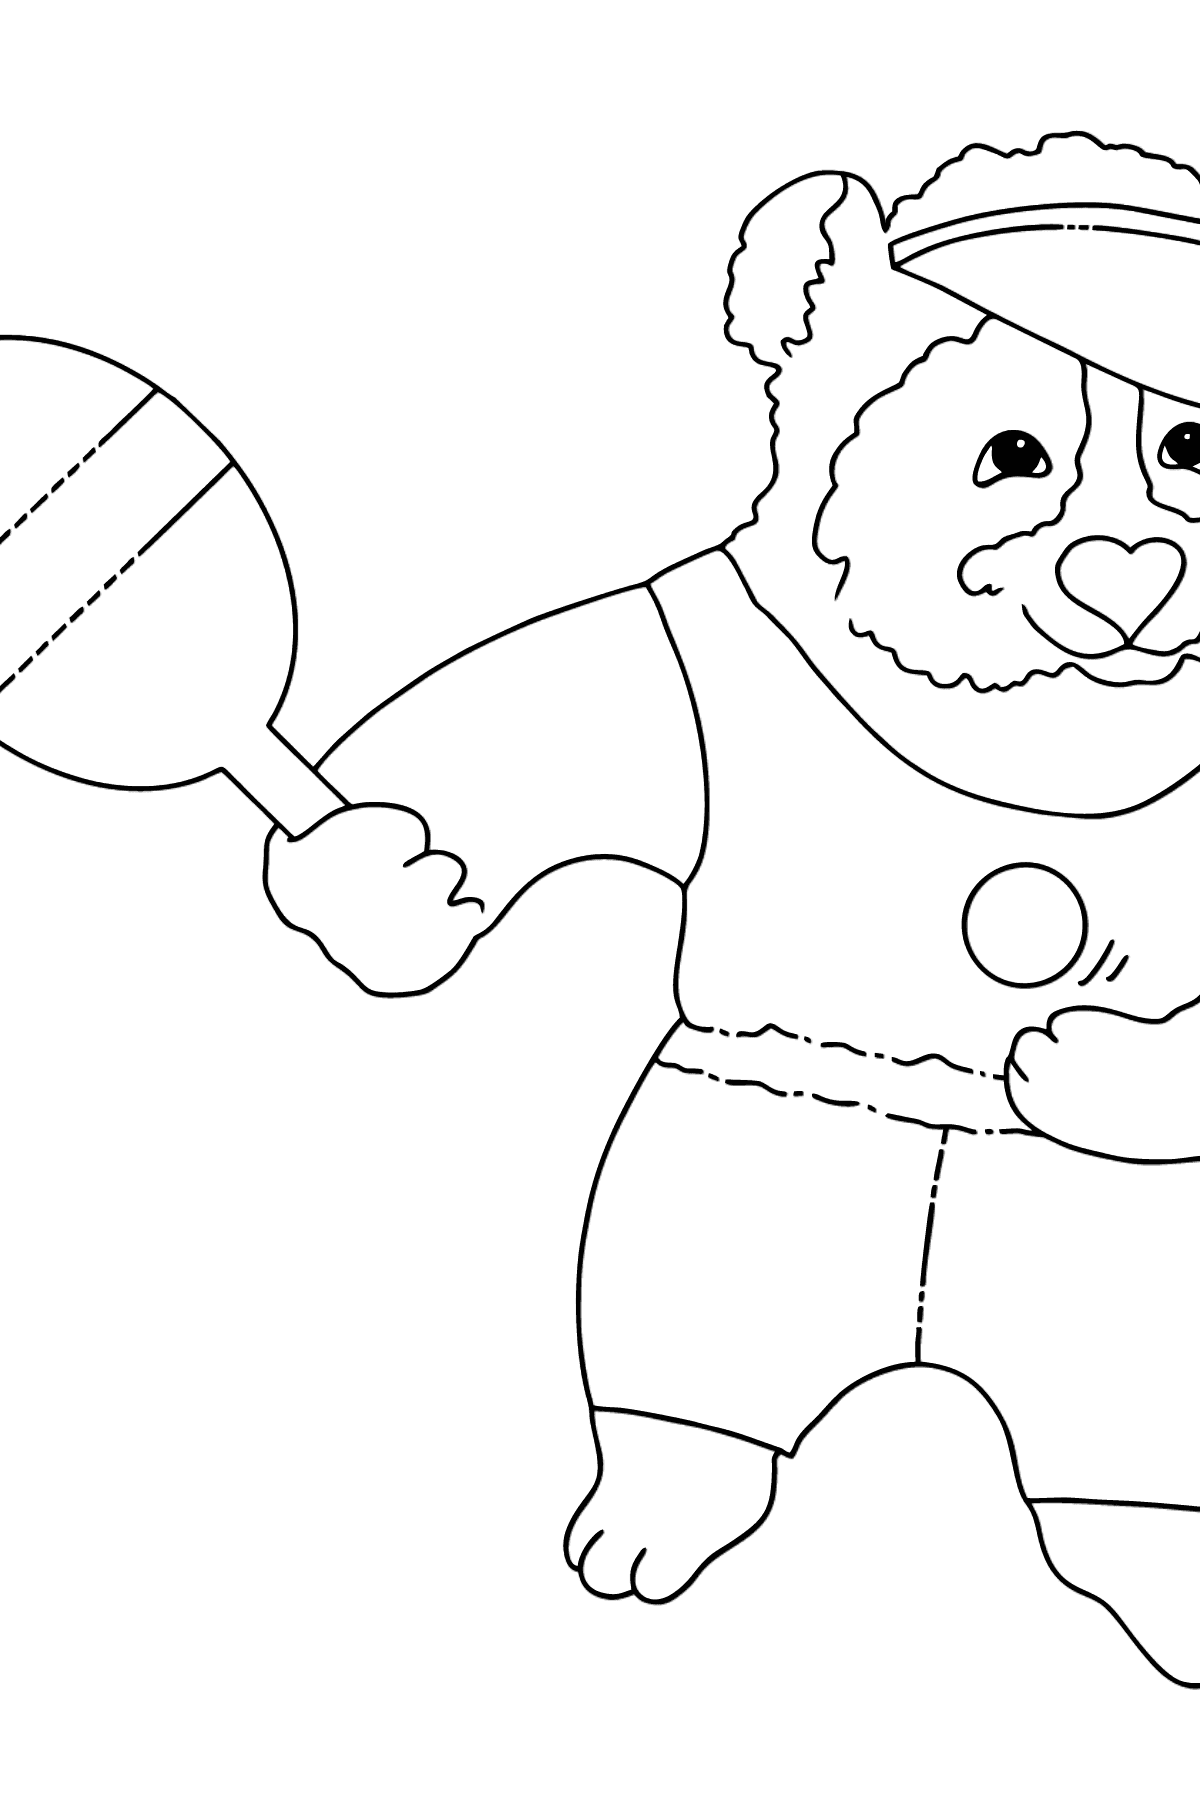 Boyama sayfası mutlu panda (basit) - Boyamalar çocuklar için